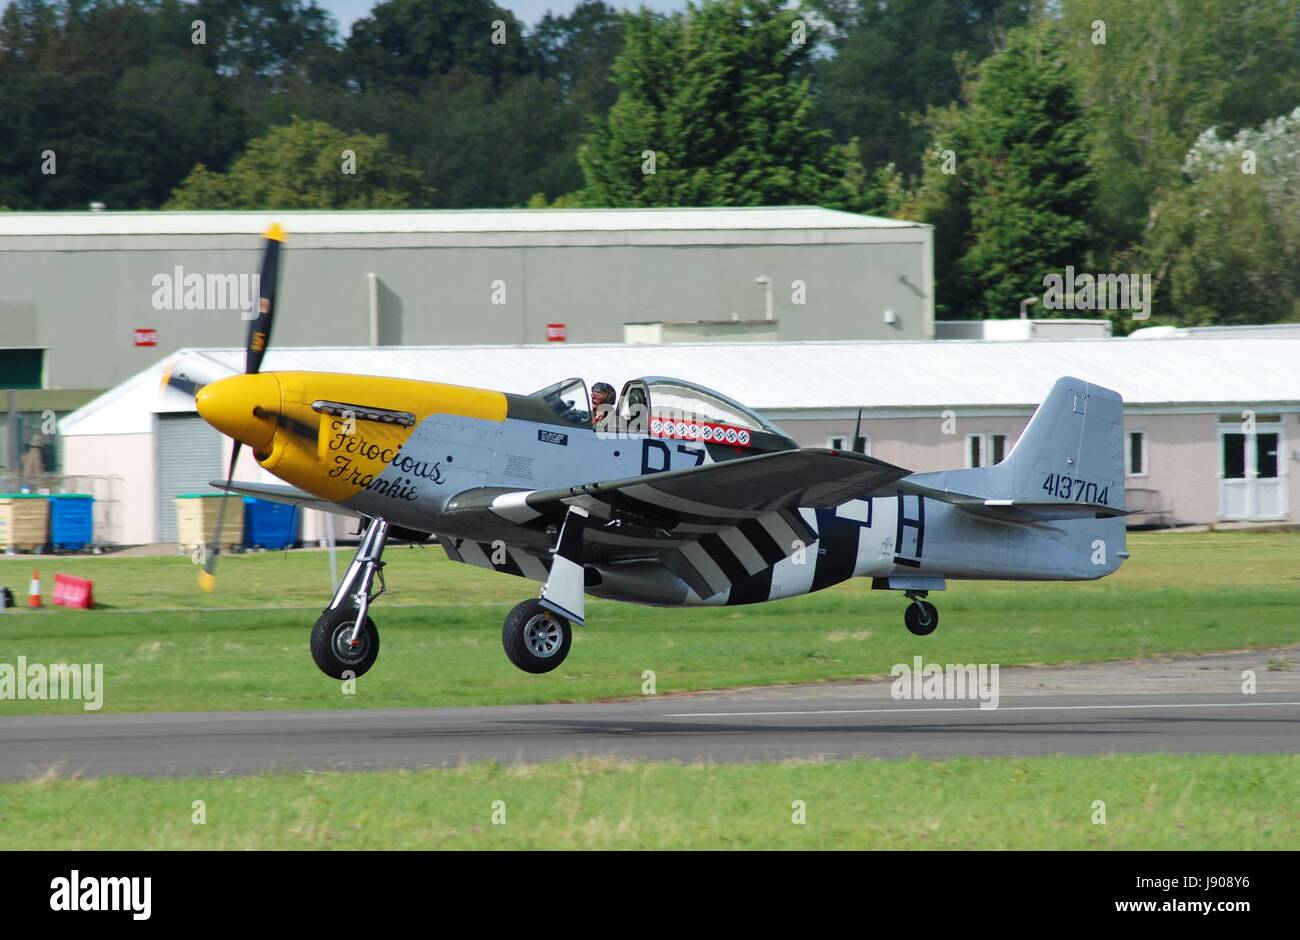 P-51D Mustang fighter Frankie féroce, à l'atterrissage au cours de la Dunsfold aéronautique à Surrey, Angleterre le 23 août 2014. Nous l'avion a été construit en 1944. Banque D'Images